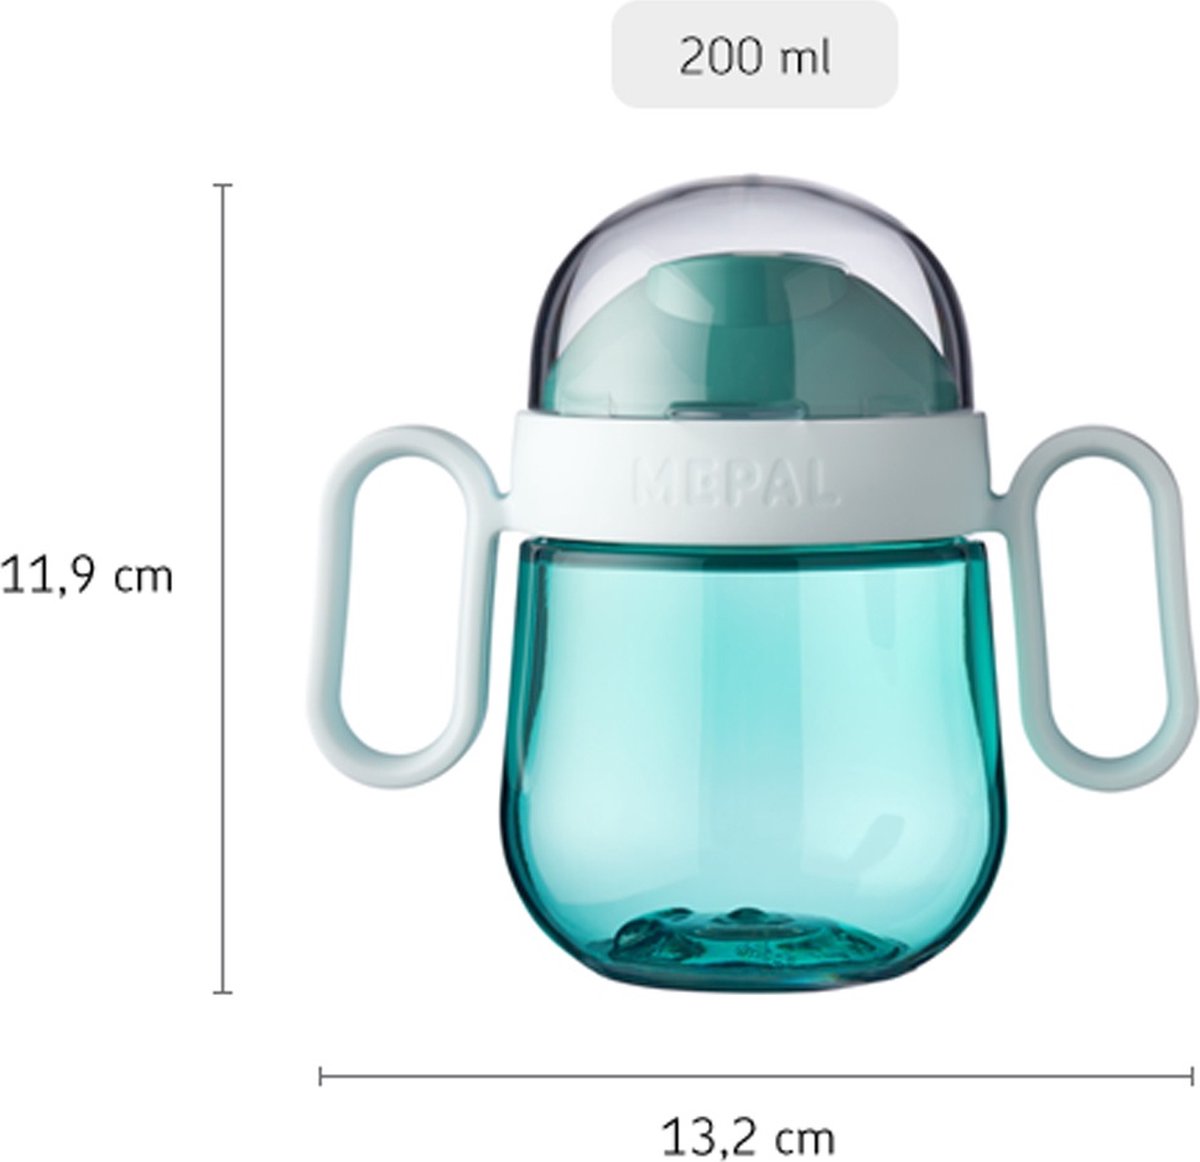 Mepal Mio – Gobelet anti-fuite 200 ml – garanti sans fuite